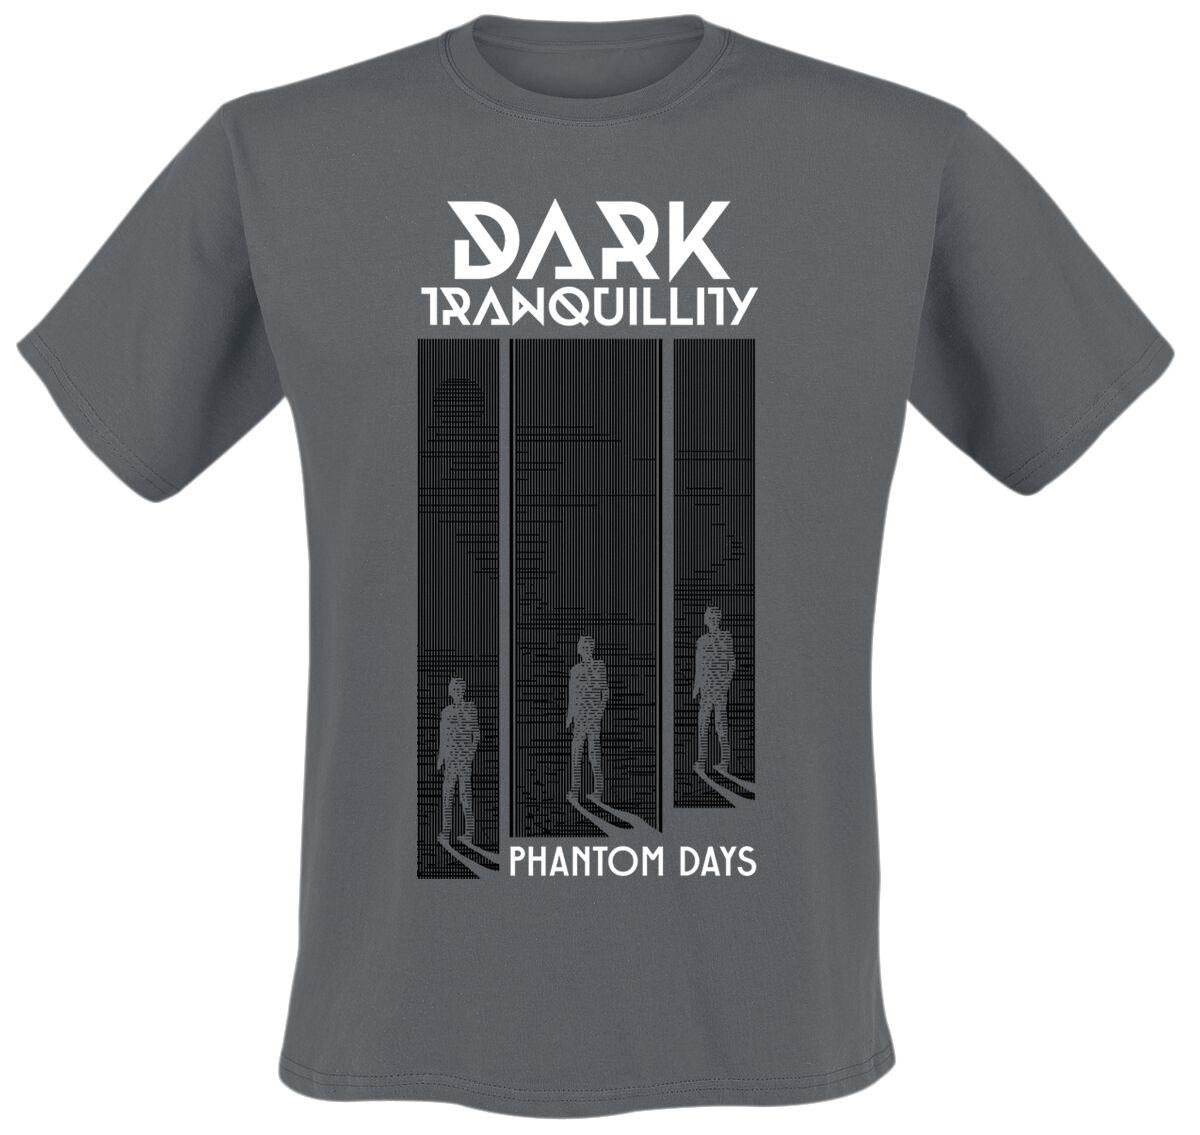 Dark Tranquillity T-Shirt - Phantom Days - S bis XXL - für Männer - Größe M - dunkelgrau  - EMP exklusives Merchandise!